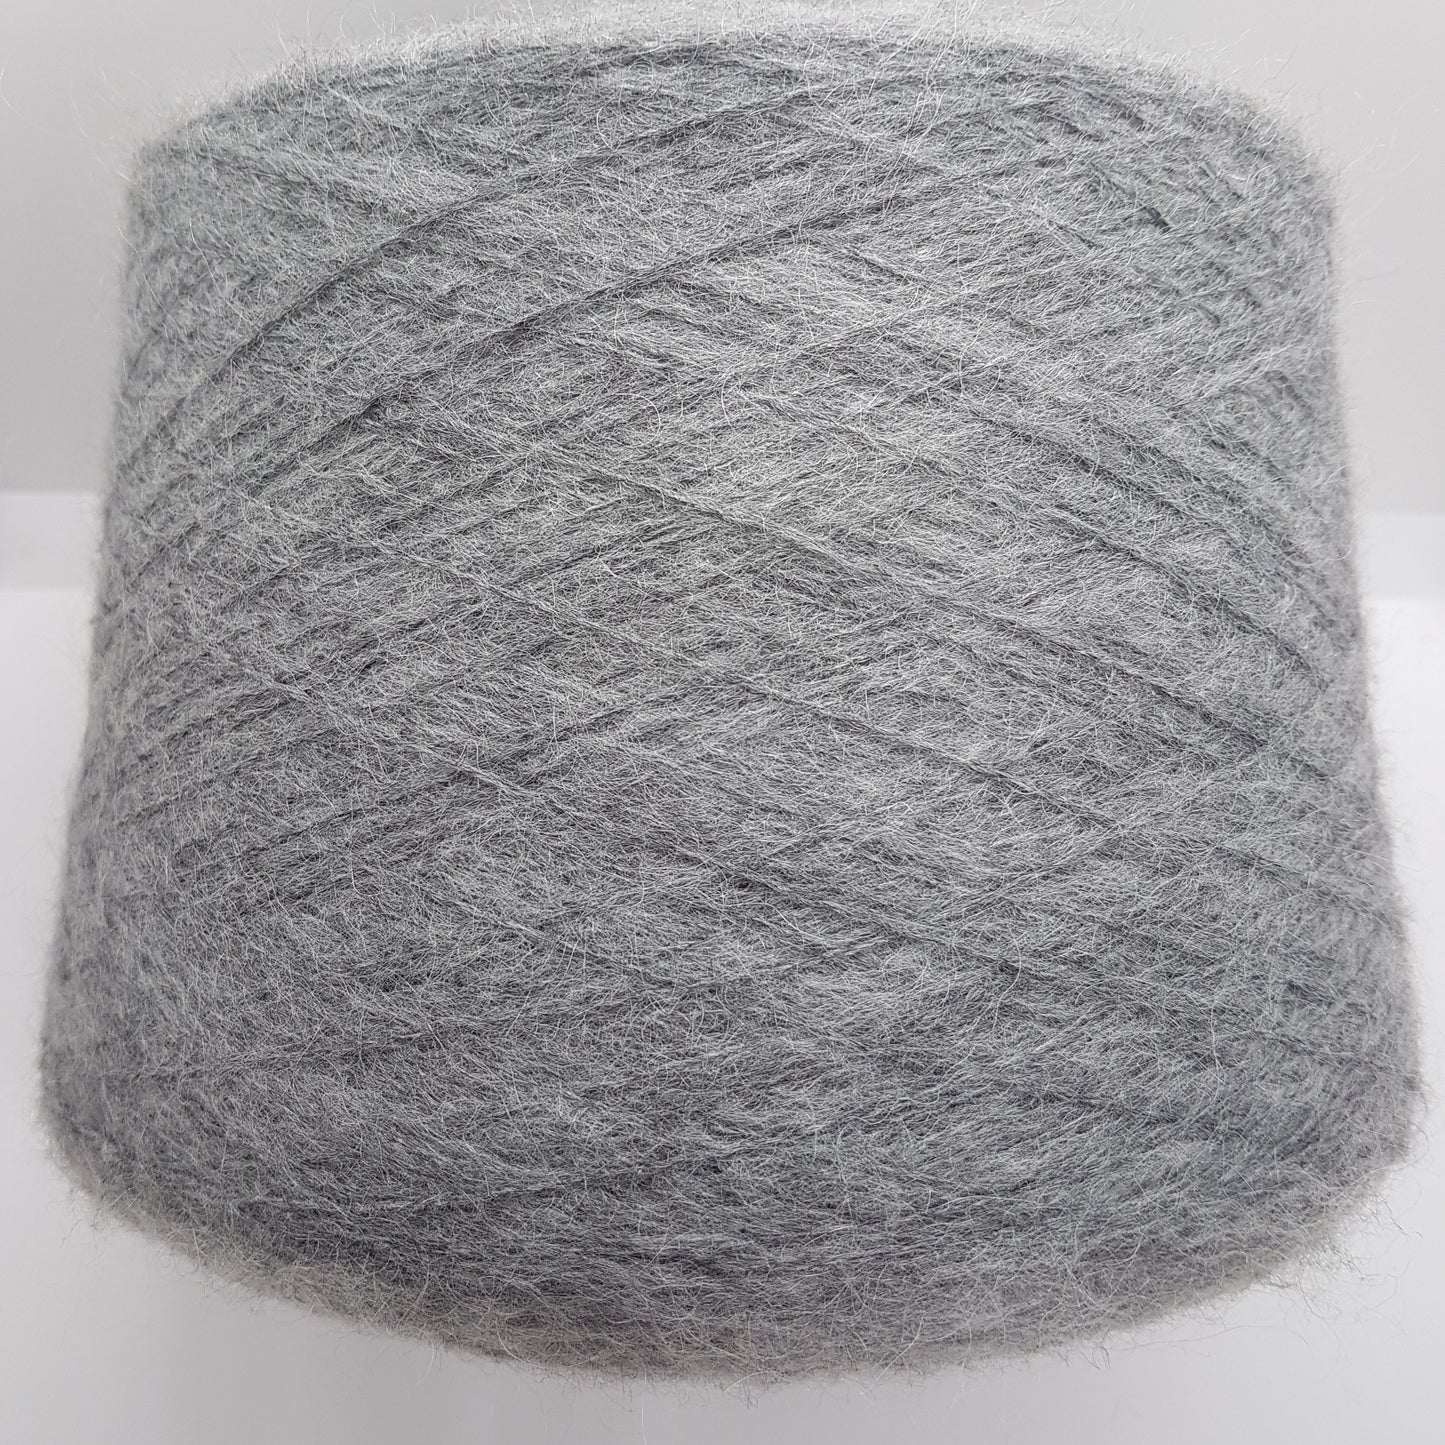 100g soft mohair Italian yarn gray color N.181